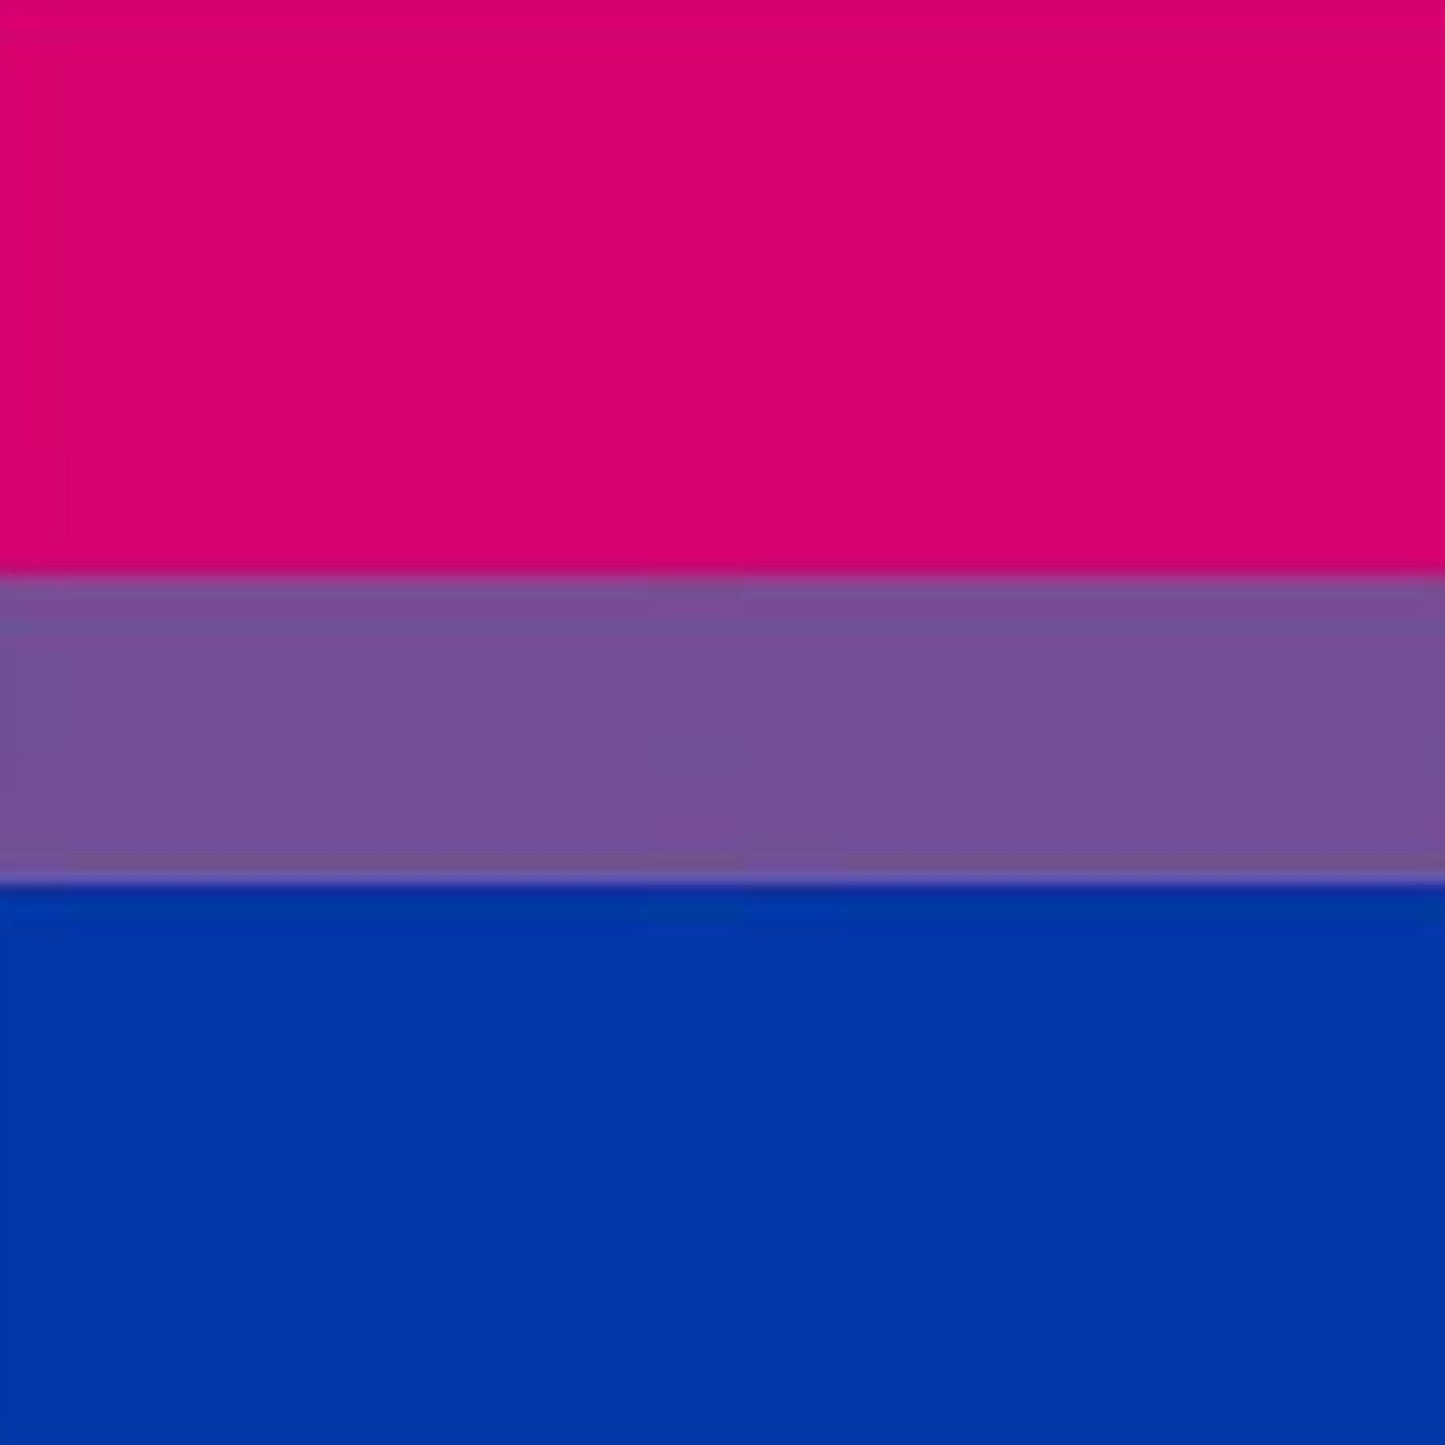 Bisexual Pride Flag, 1999.